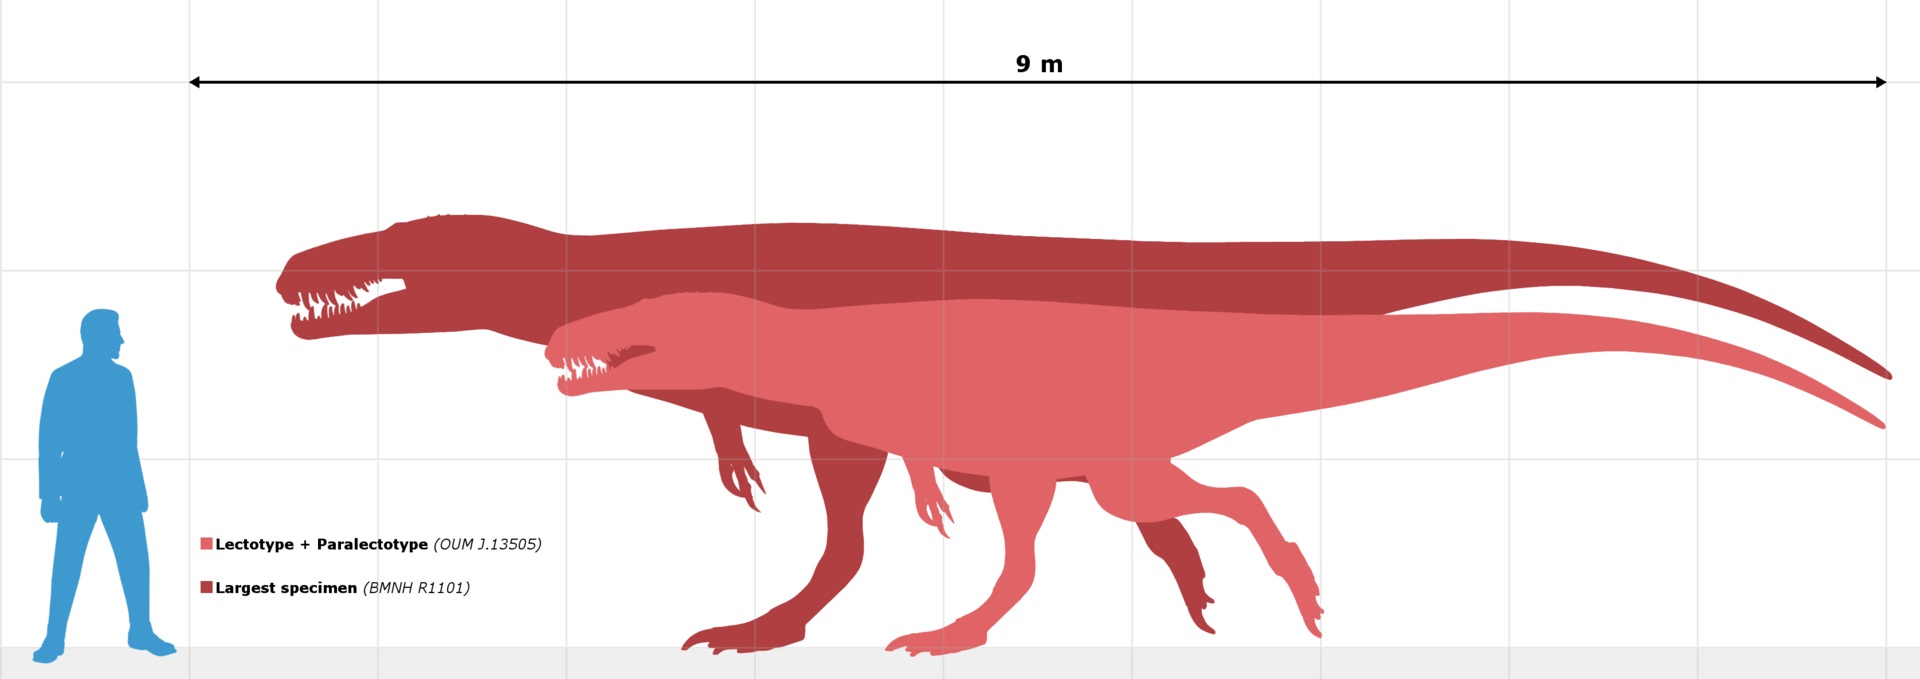 Skutečný původce fosilie byl velký teropodní dinosaurus z období střední jury. Pokud jím byl rod Megalosaurus, pak se jednalo o dravého teropoda o délce asi 7 až 9 metrů a hmotnosti kolem 1 tuny. Největší známé exempláře tohoto evropského megalosauri